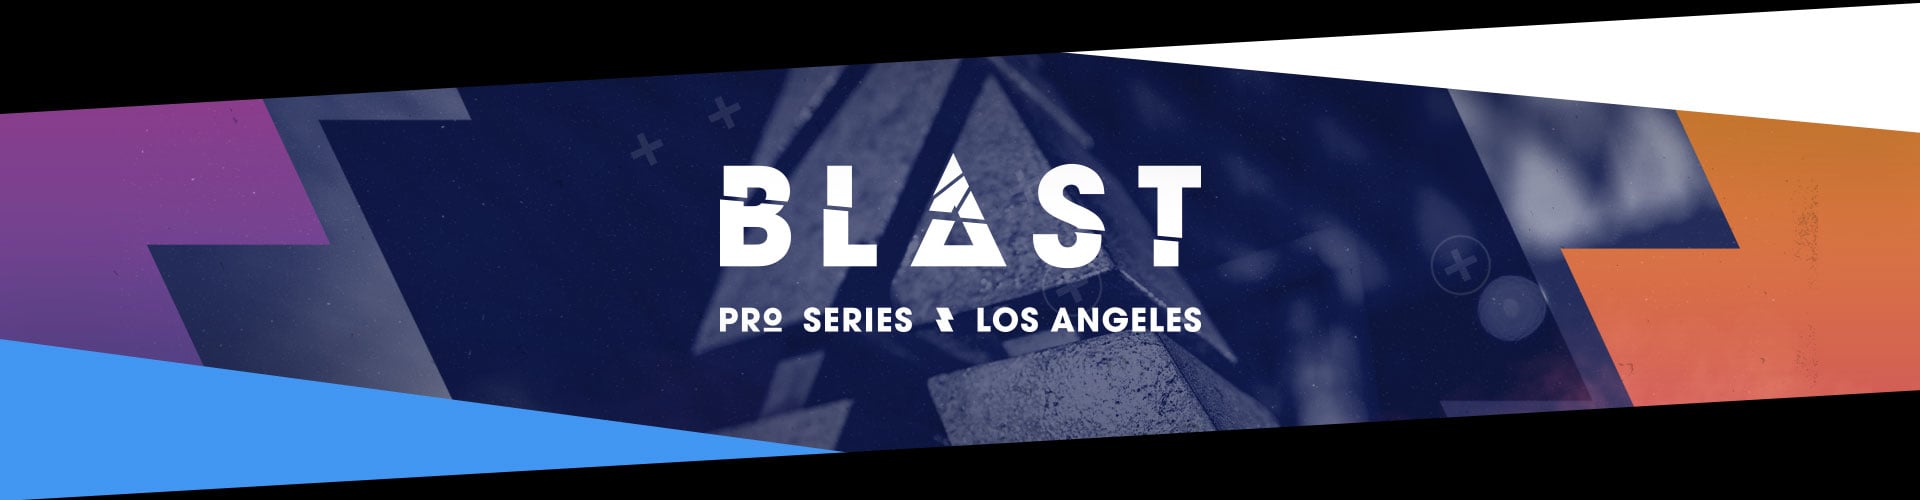 BLAST Pro Series Los Angeles har avgjorts och Liquid står som vinnare!